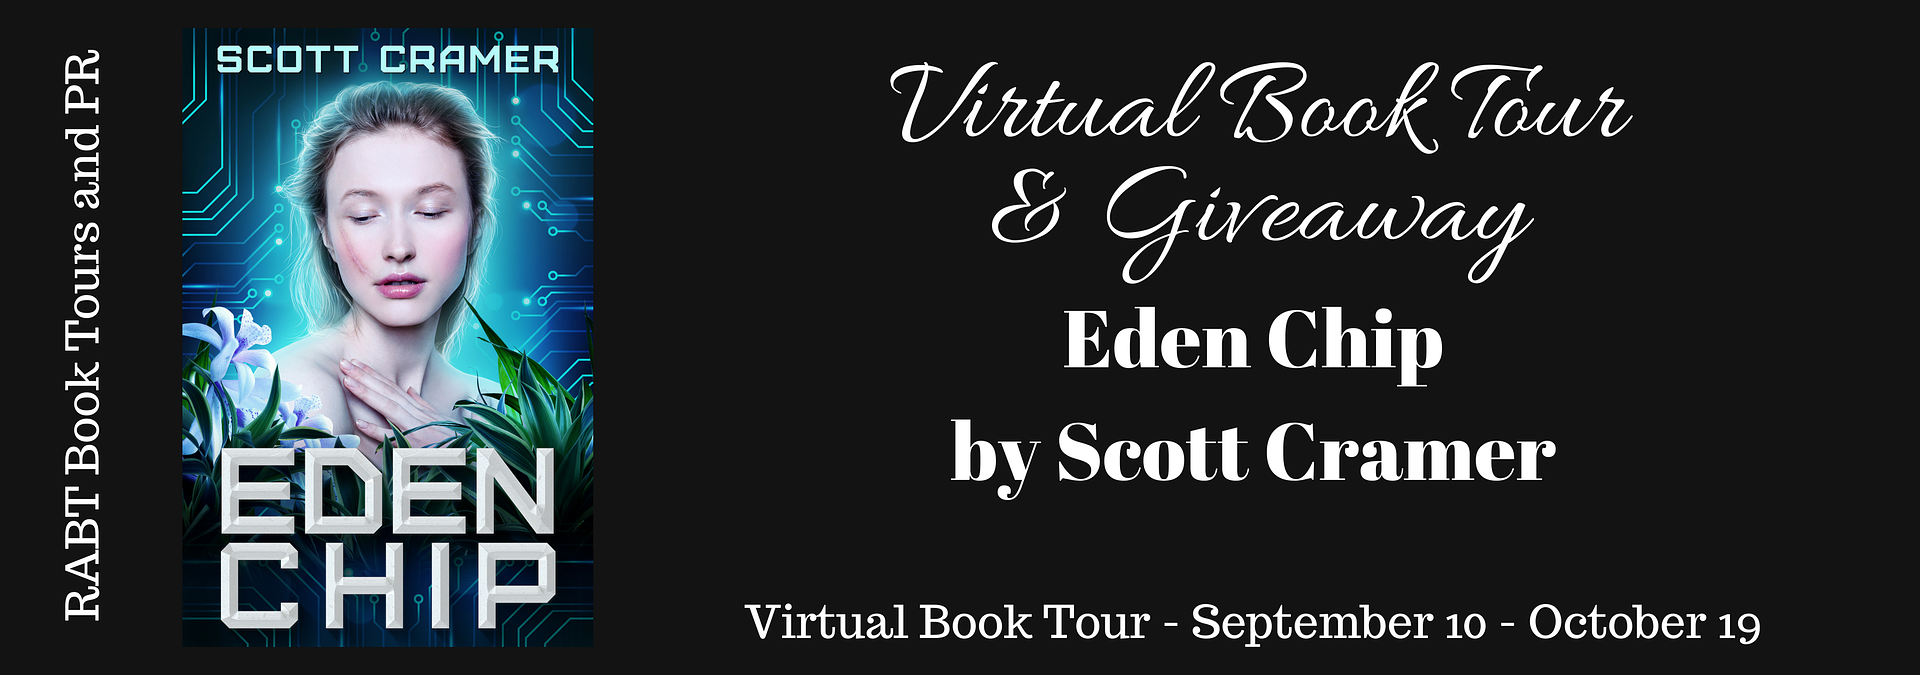 Virtual Book Tour: Eden Chip by Scott Cramer @cramer_scott #scifi #giveaway #interview